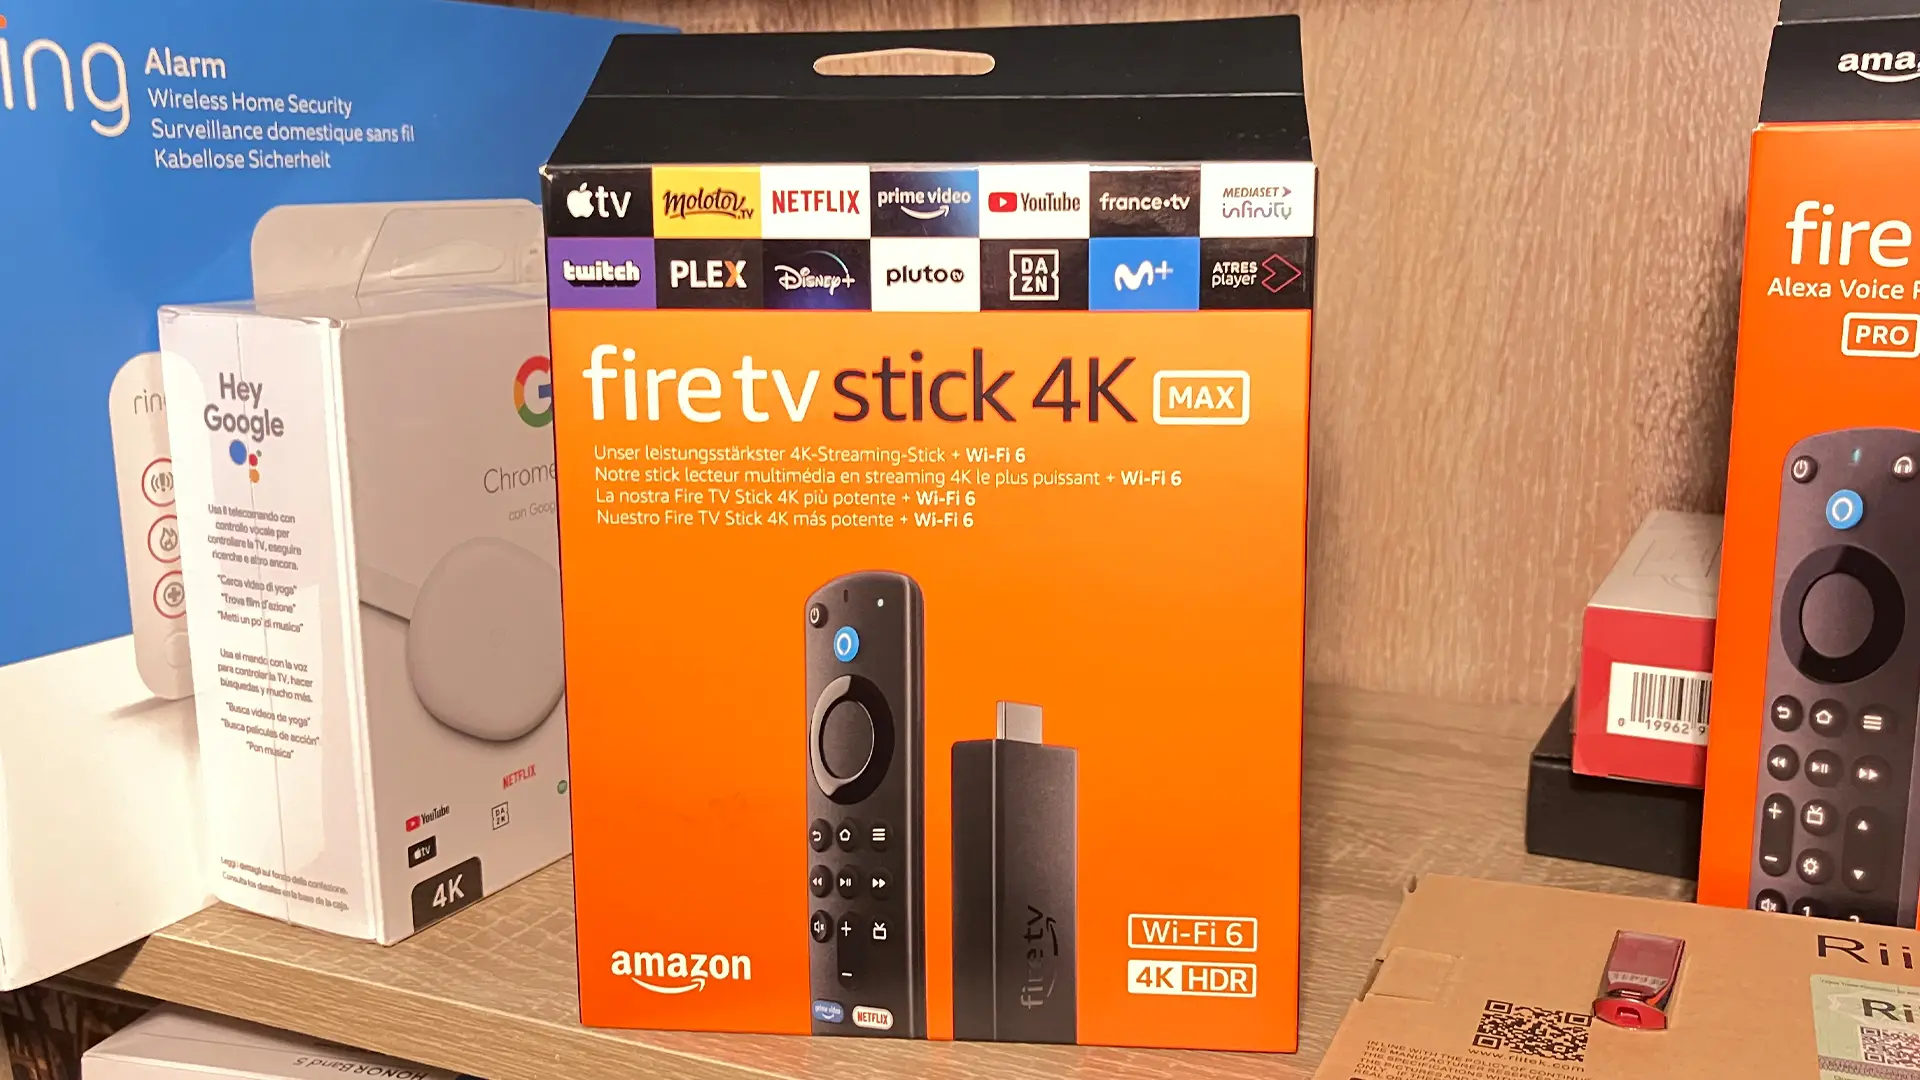 Fire TV Stick 4K Max ¡El streaming que necesitas a precio insuperable!